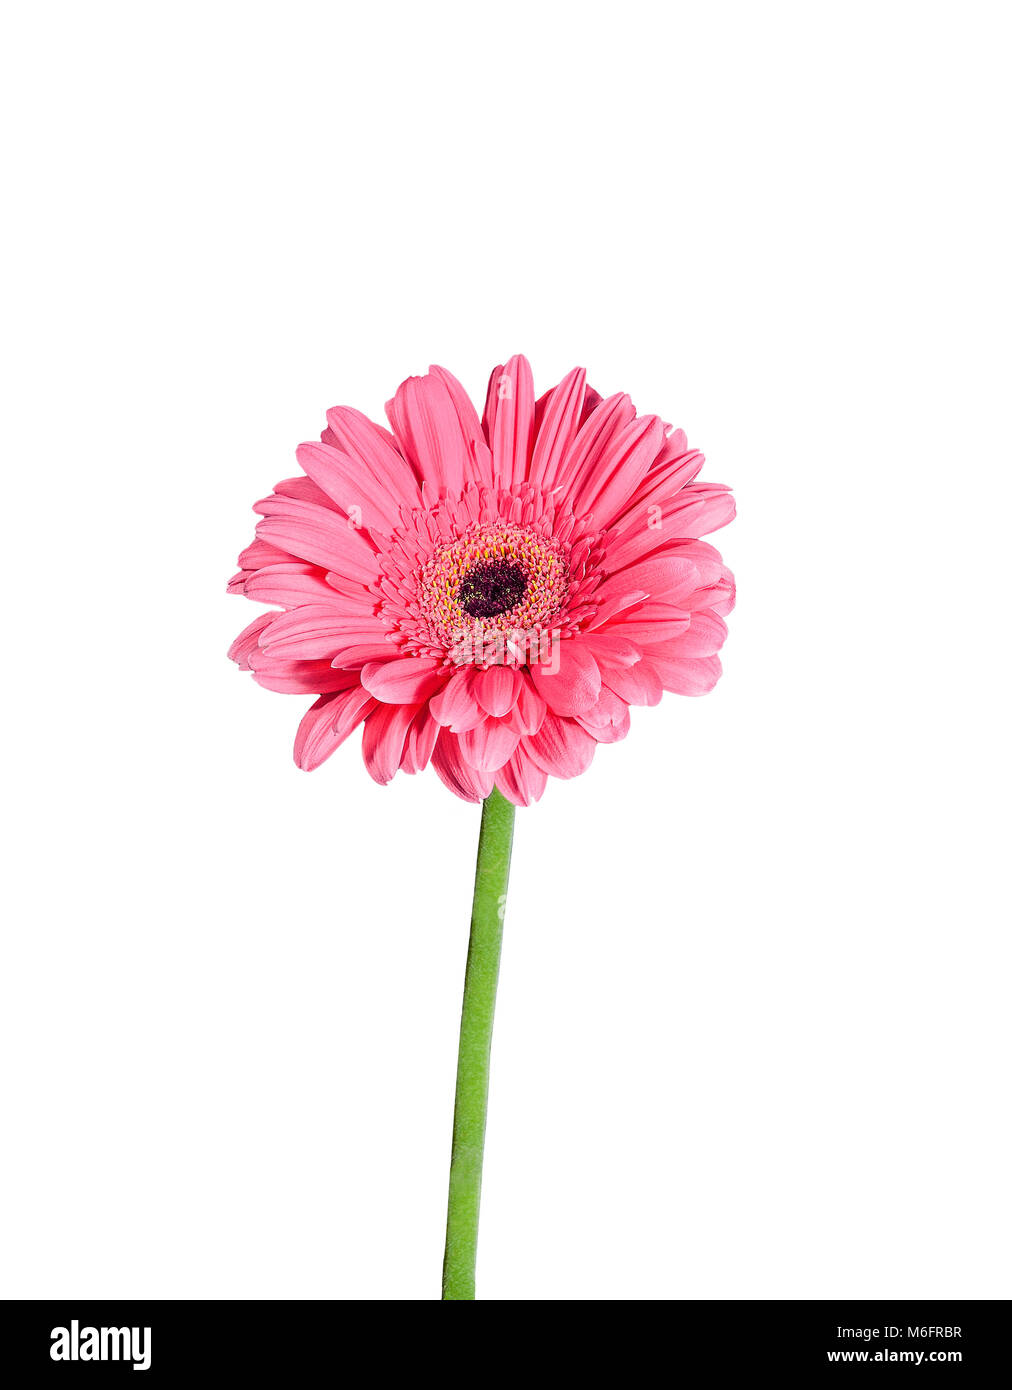 Dolce Gerbera daisy fiore con petali di rosa e verde vicino a stelo alto isolato su uno sfondo bianco Foto Stock